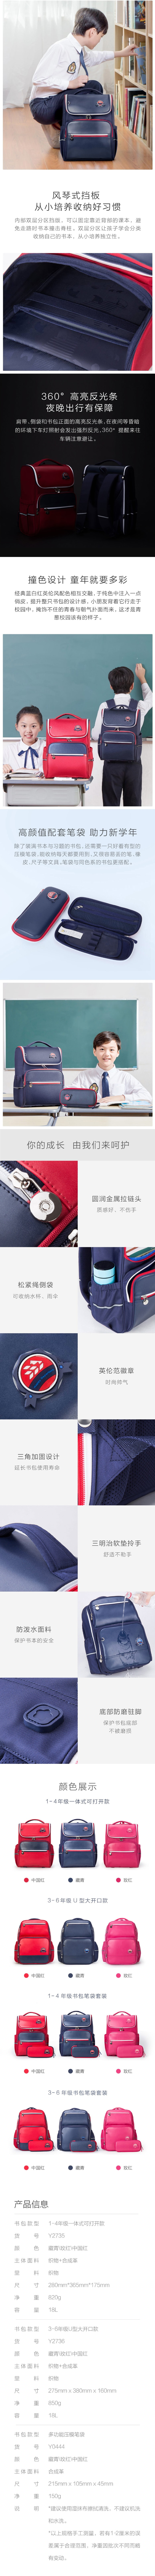 Xiaoyang grade 1-6 light weight ridge protection bag 1 piece/bag